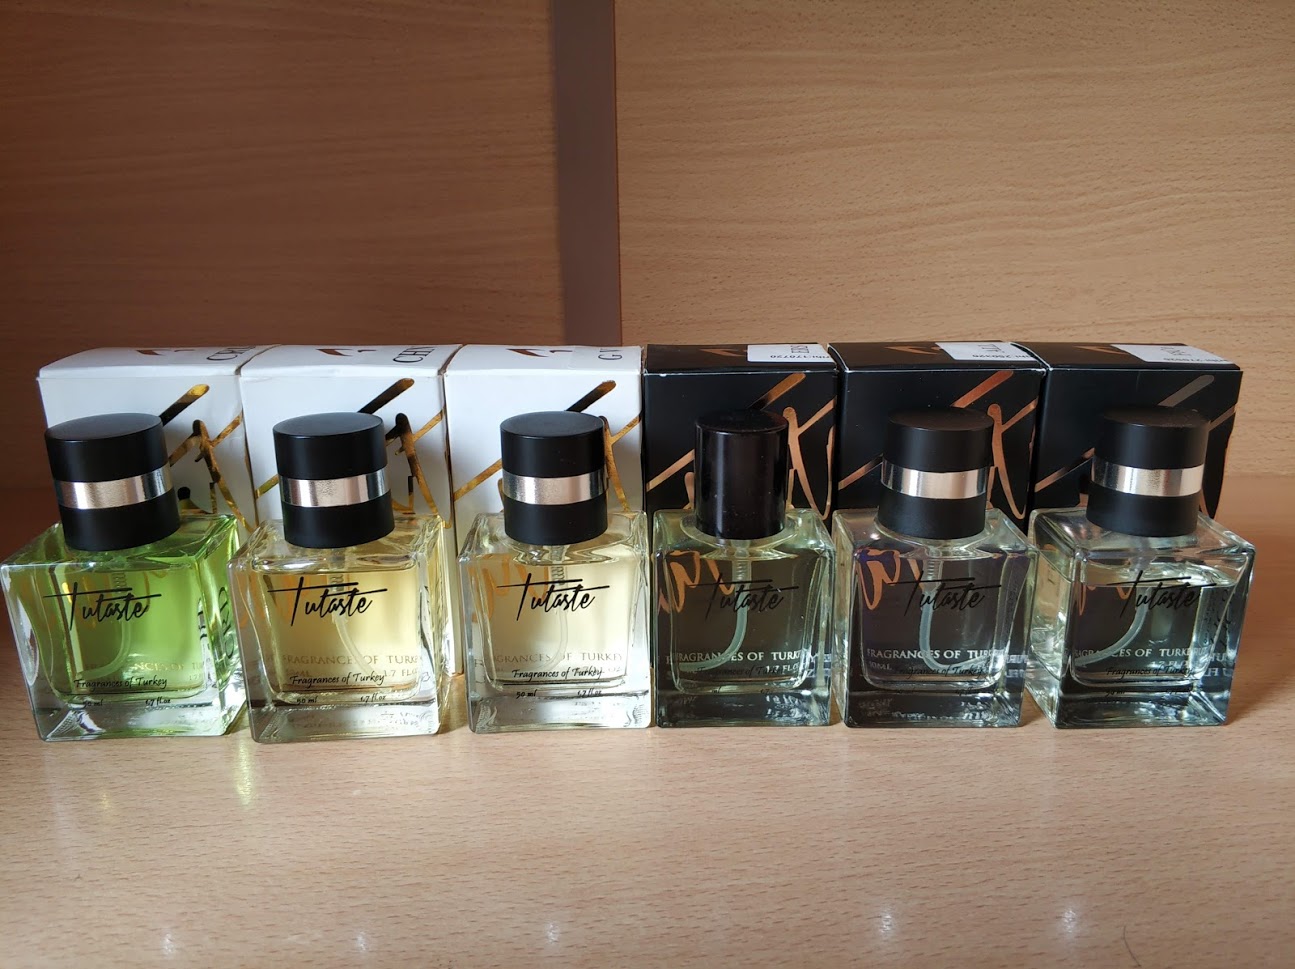 Satılık Tutaste Parfümler | DonanımHaber Forum